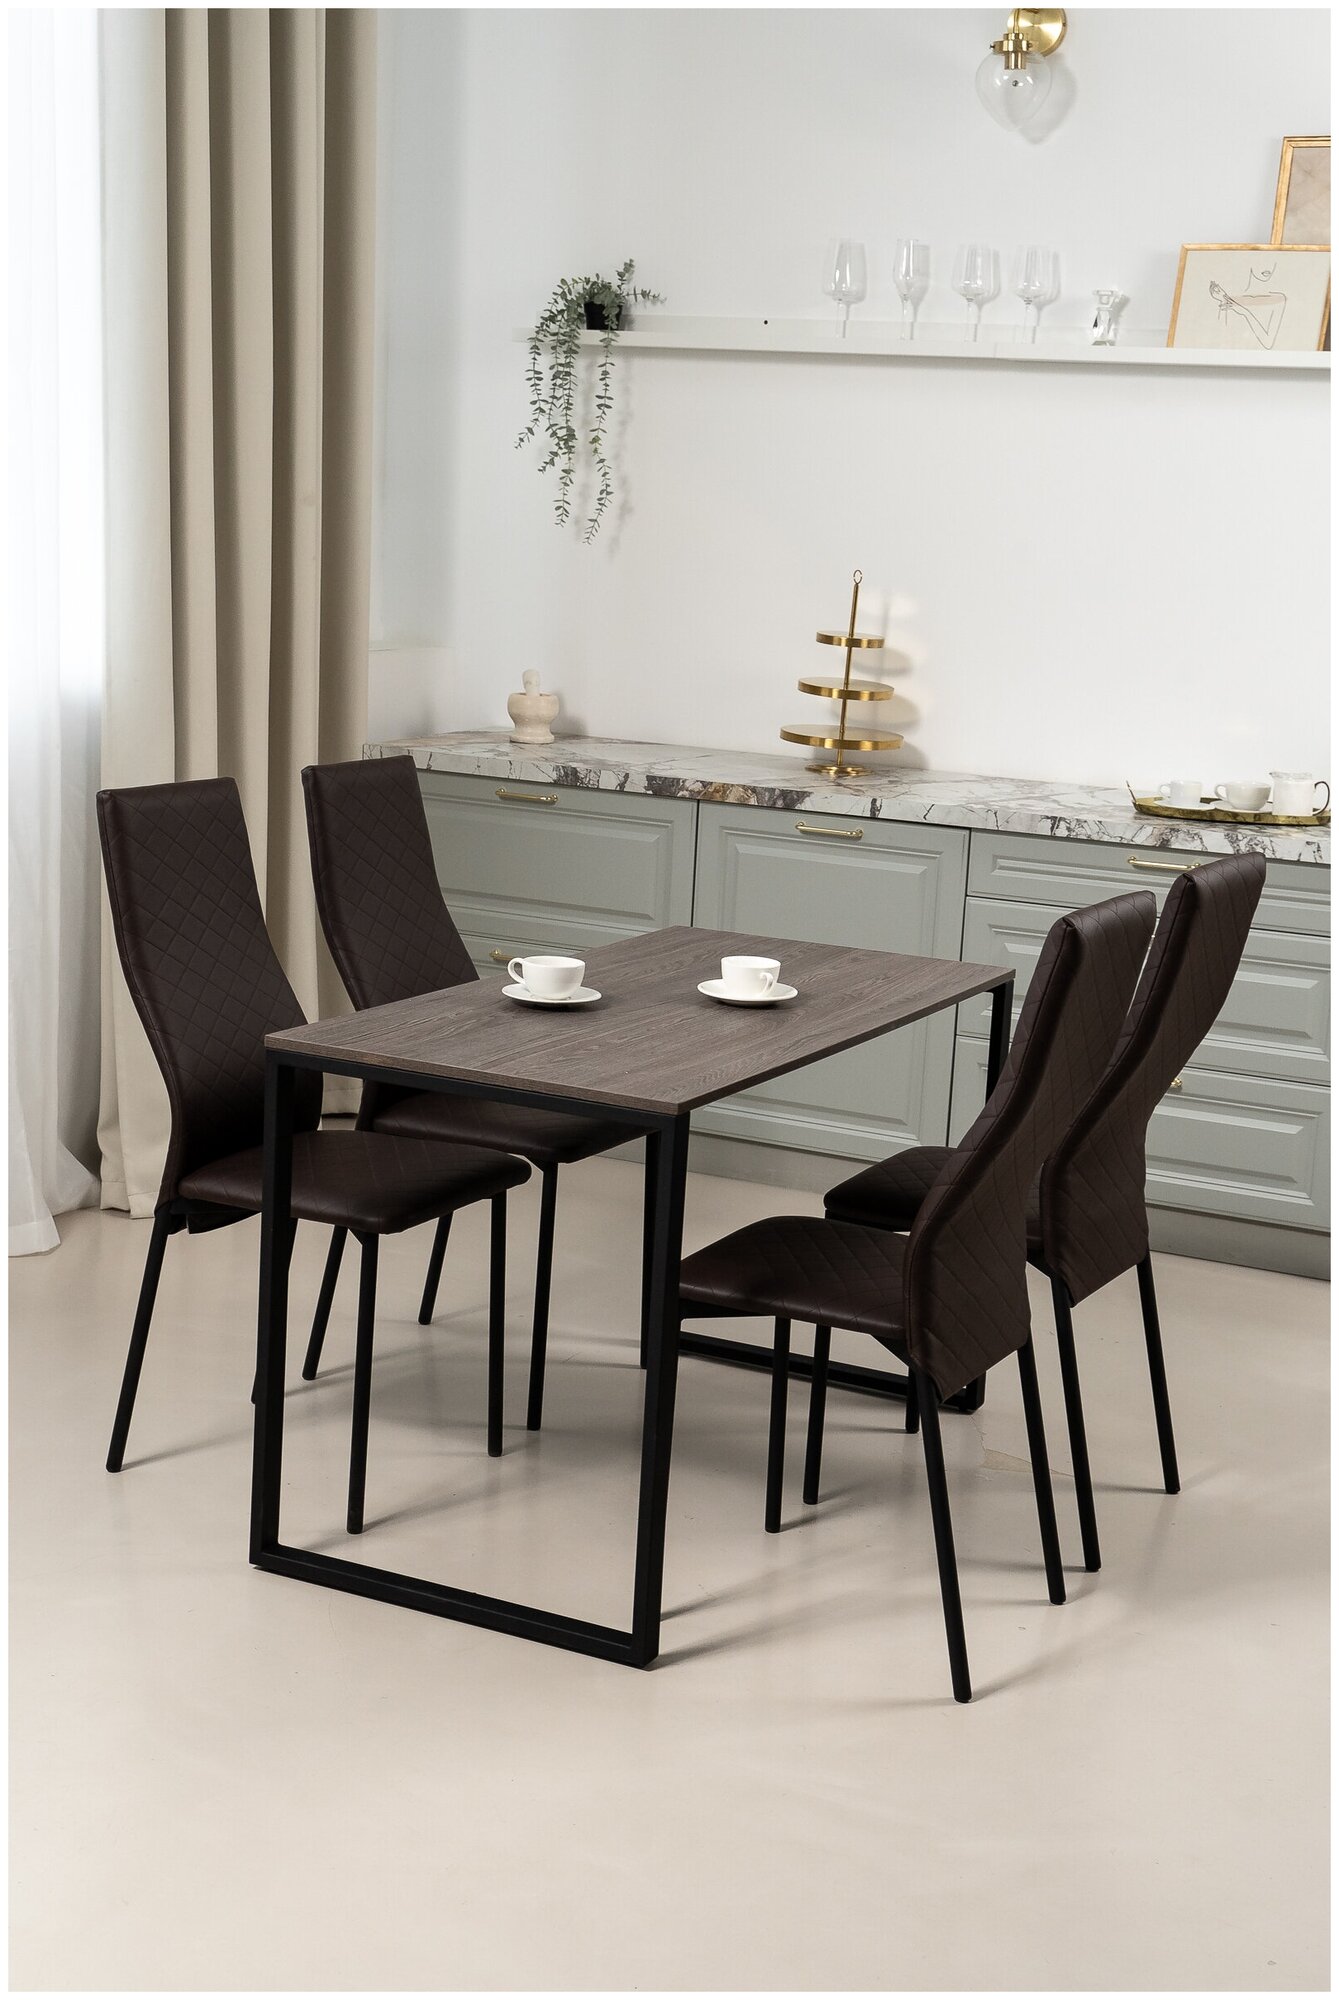 Обеденная группа Стол и 4 стула, стол «Ясень Анкор» 120х60х75, стулья Коричневые искусственная кожа 4 шт.